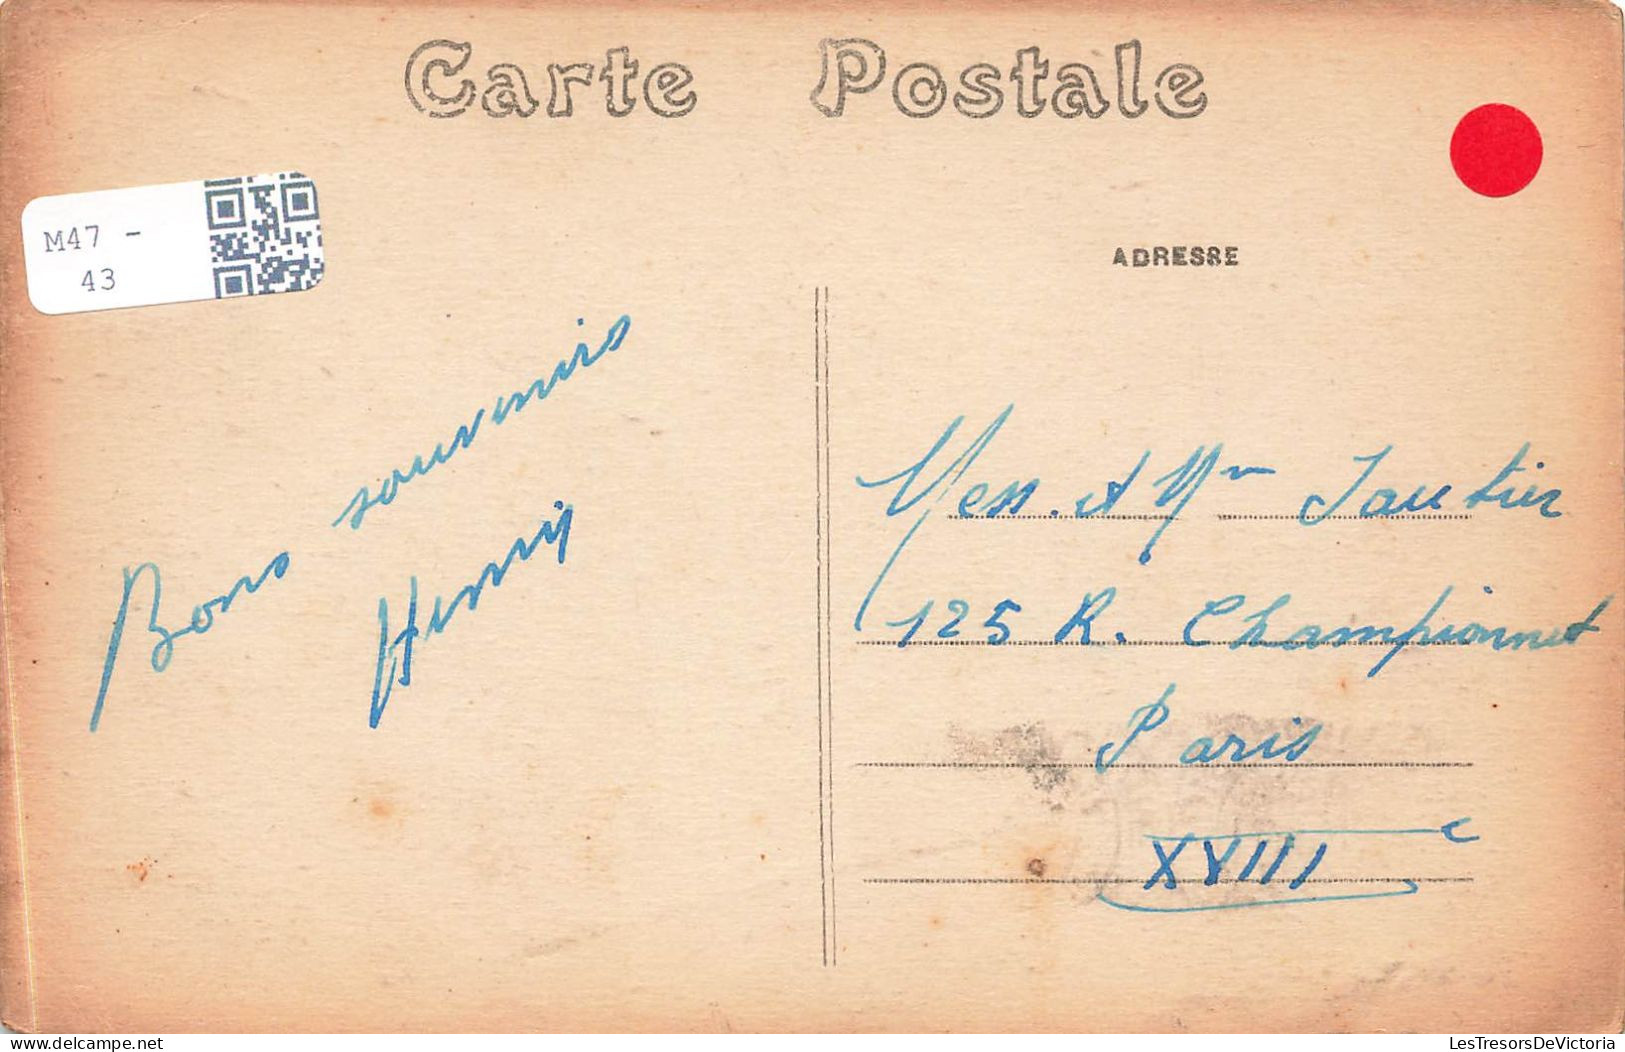 FRANCE - Bécherel ( I & V) - Vue Générale Prise Du Parc De Caradeuc - Vue Générale - Carte Postale Ancienne - Bécherel